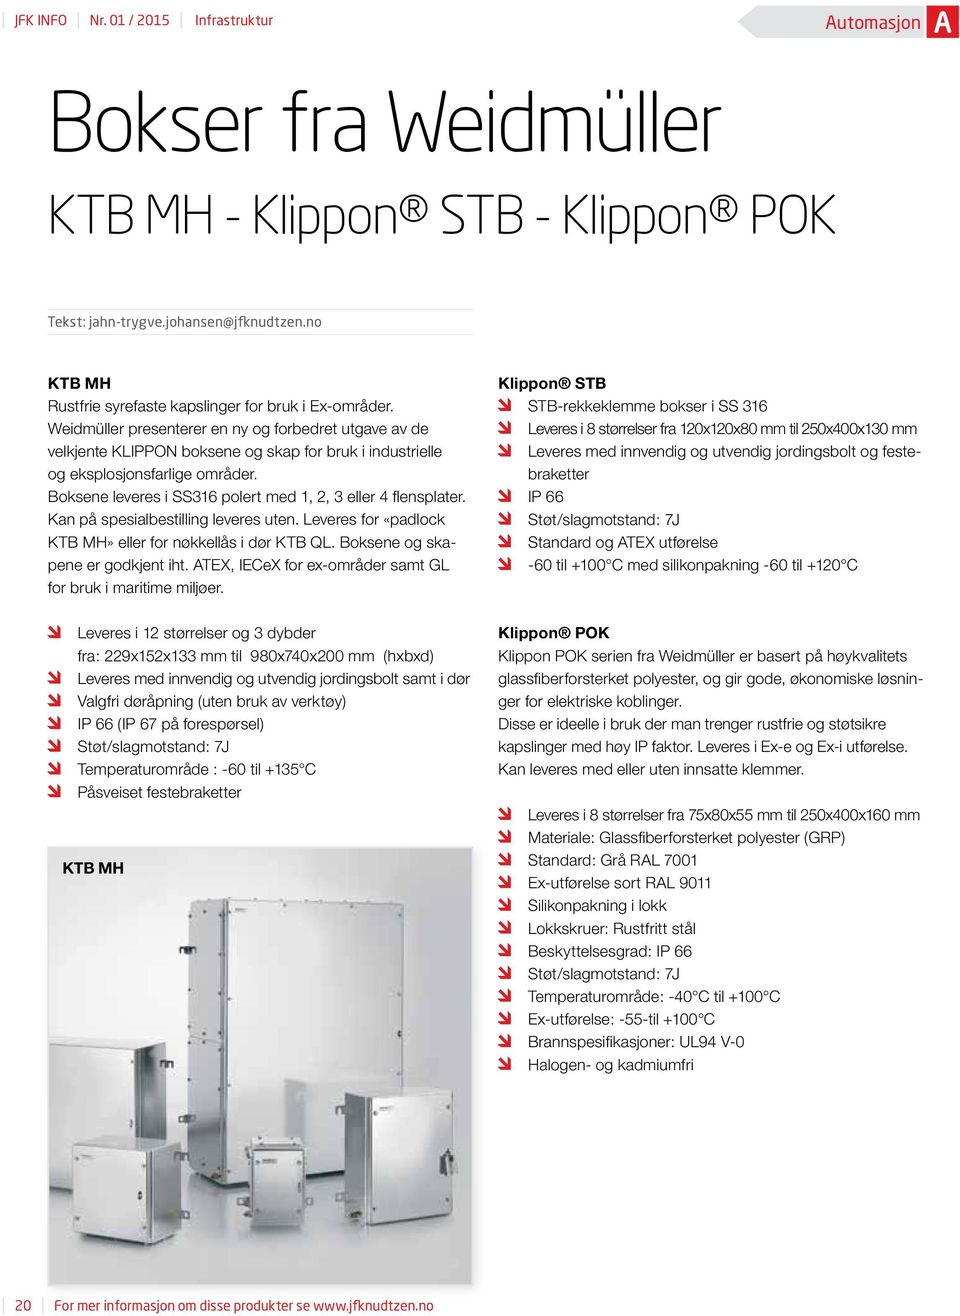 Weidmüller presenterer en ny og forbedret utgave av de velkjente KLIPPON boksene og skap for bruk i industrielle og eksplosjonsfarlige områder.